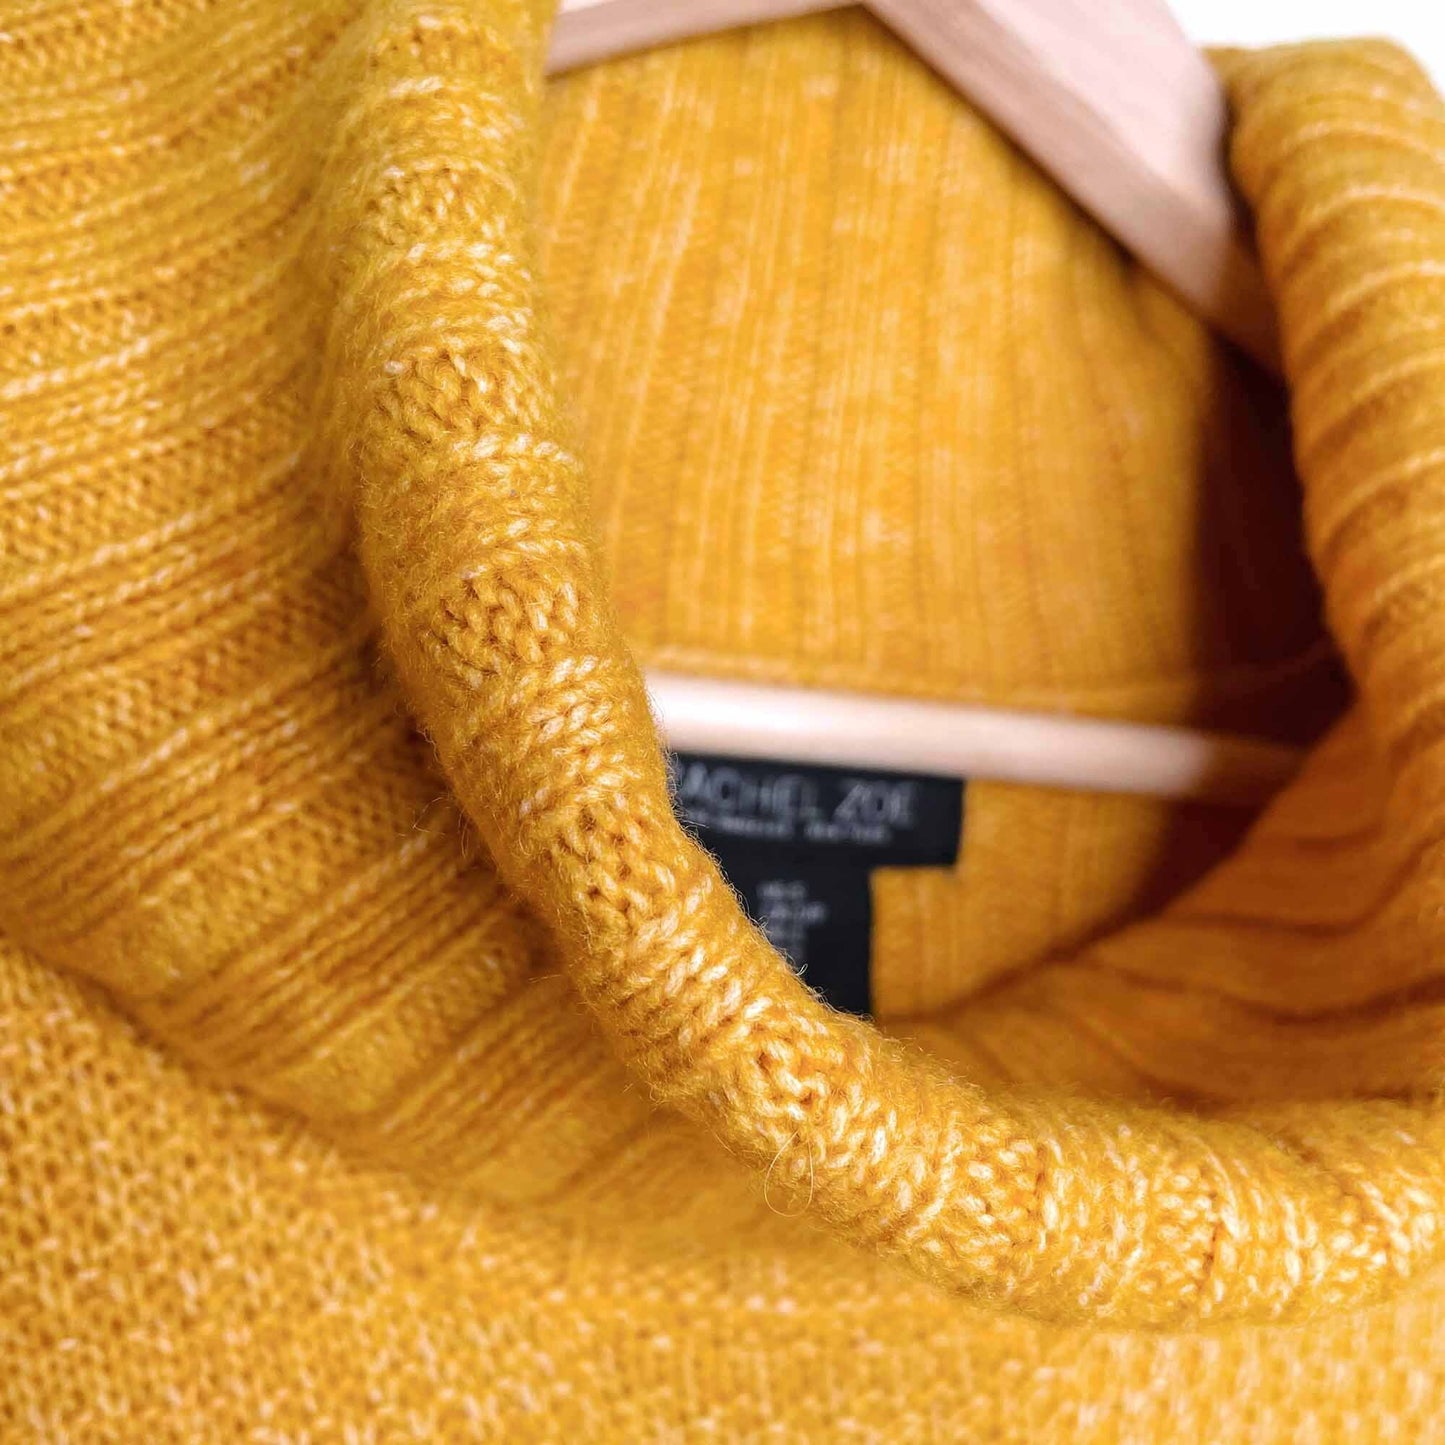 rachel zoe wool-blend mustard turtleneck sweater - size small